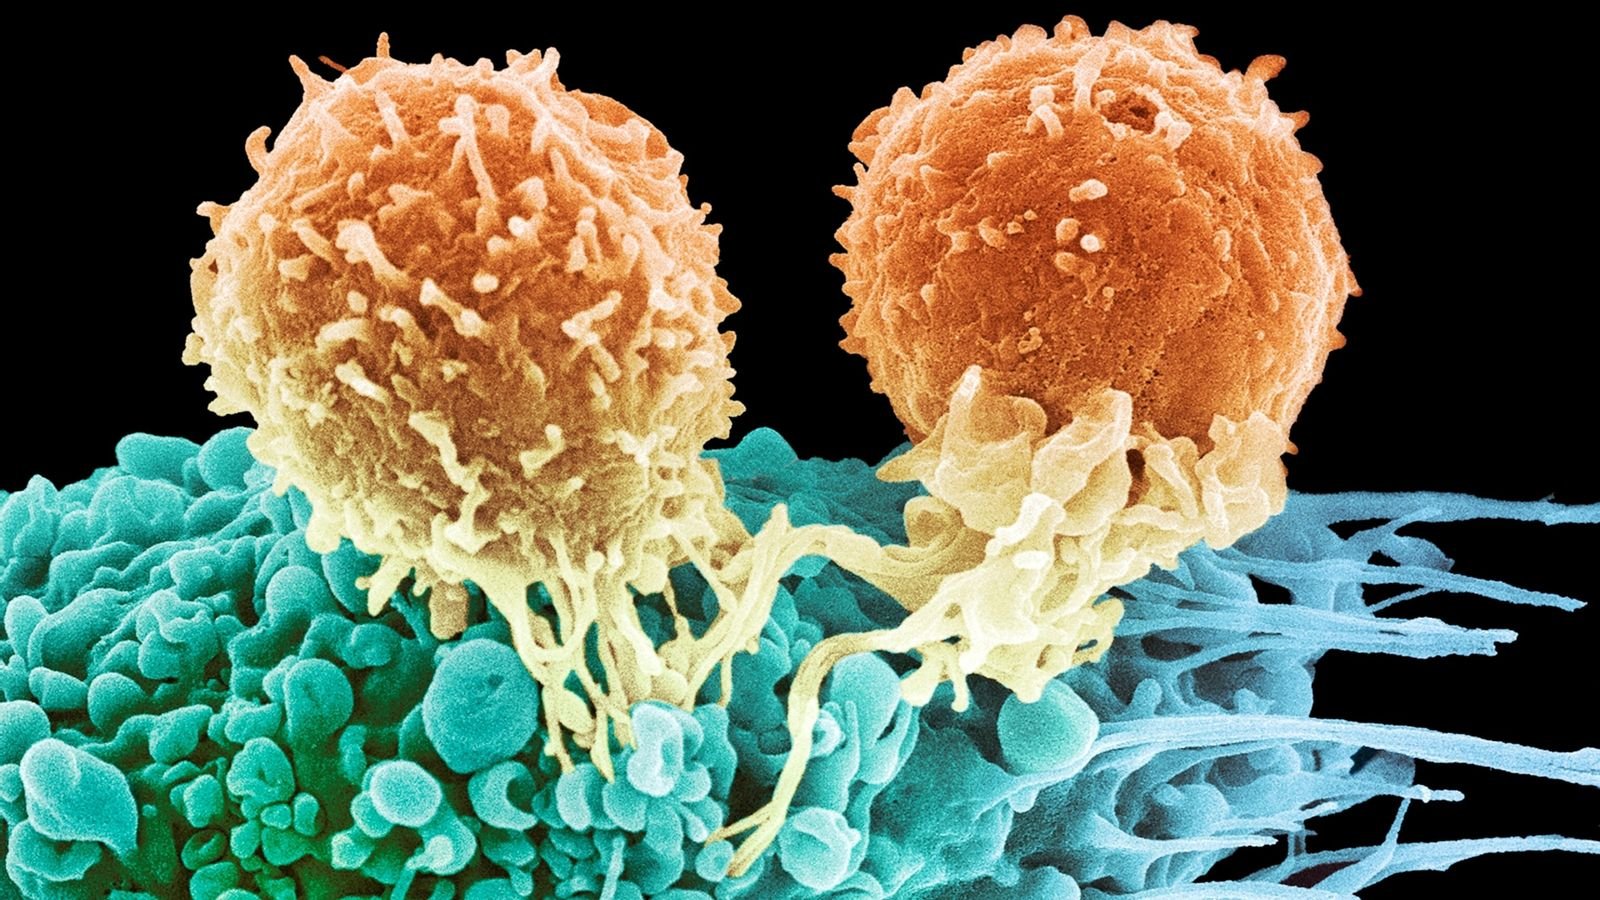  O nouă ţintă terapeutică pentru cancerul metastatic, identificată de cercetători